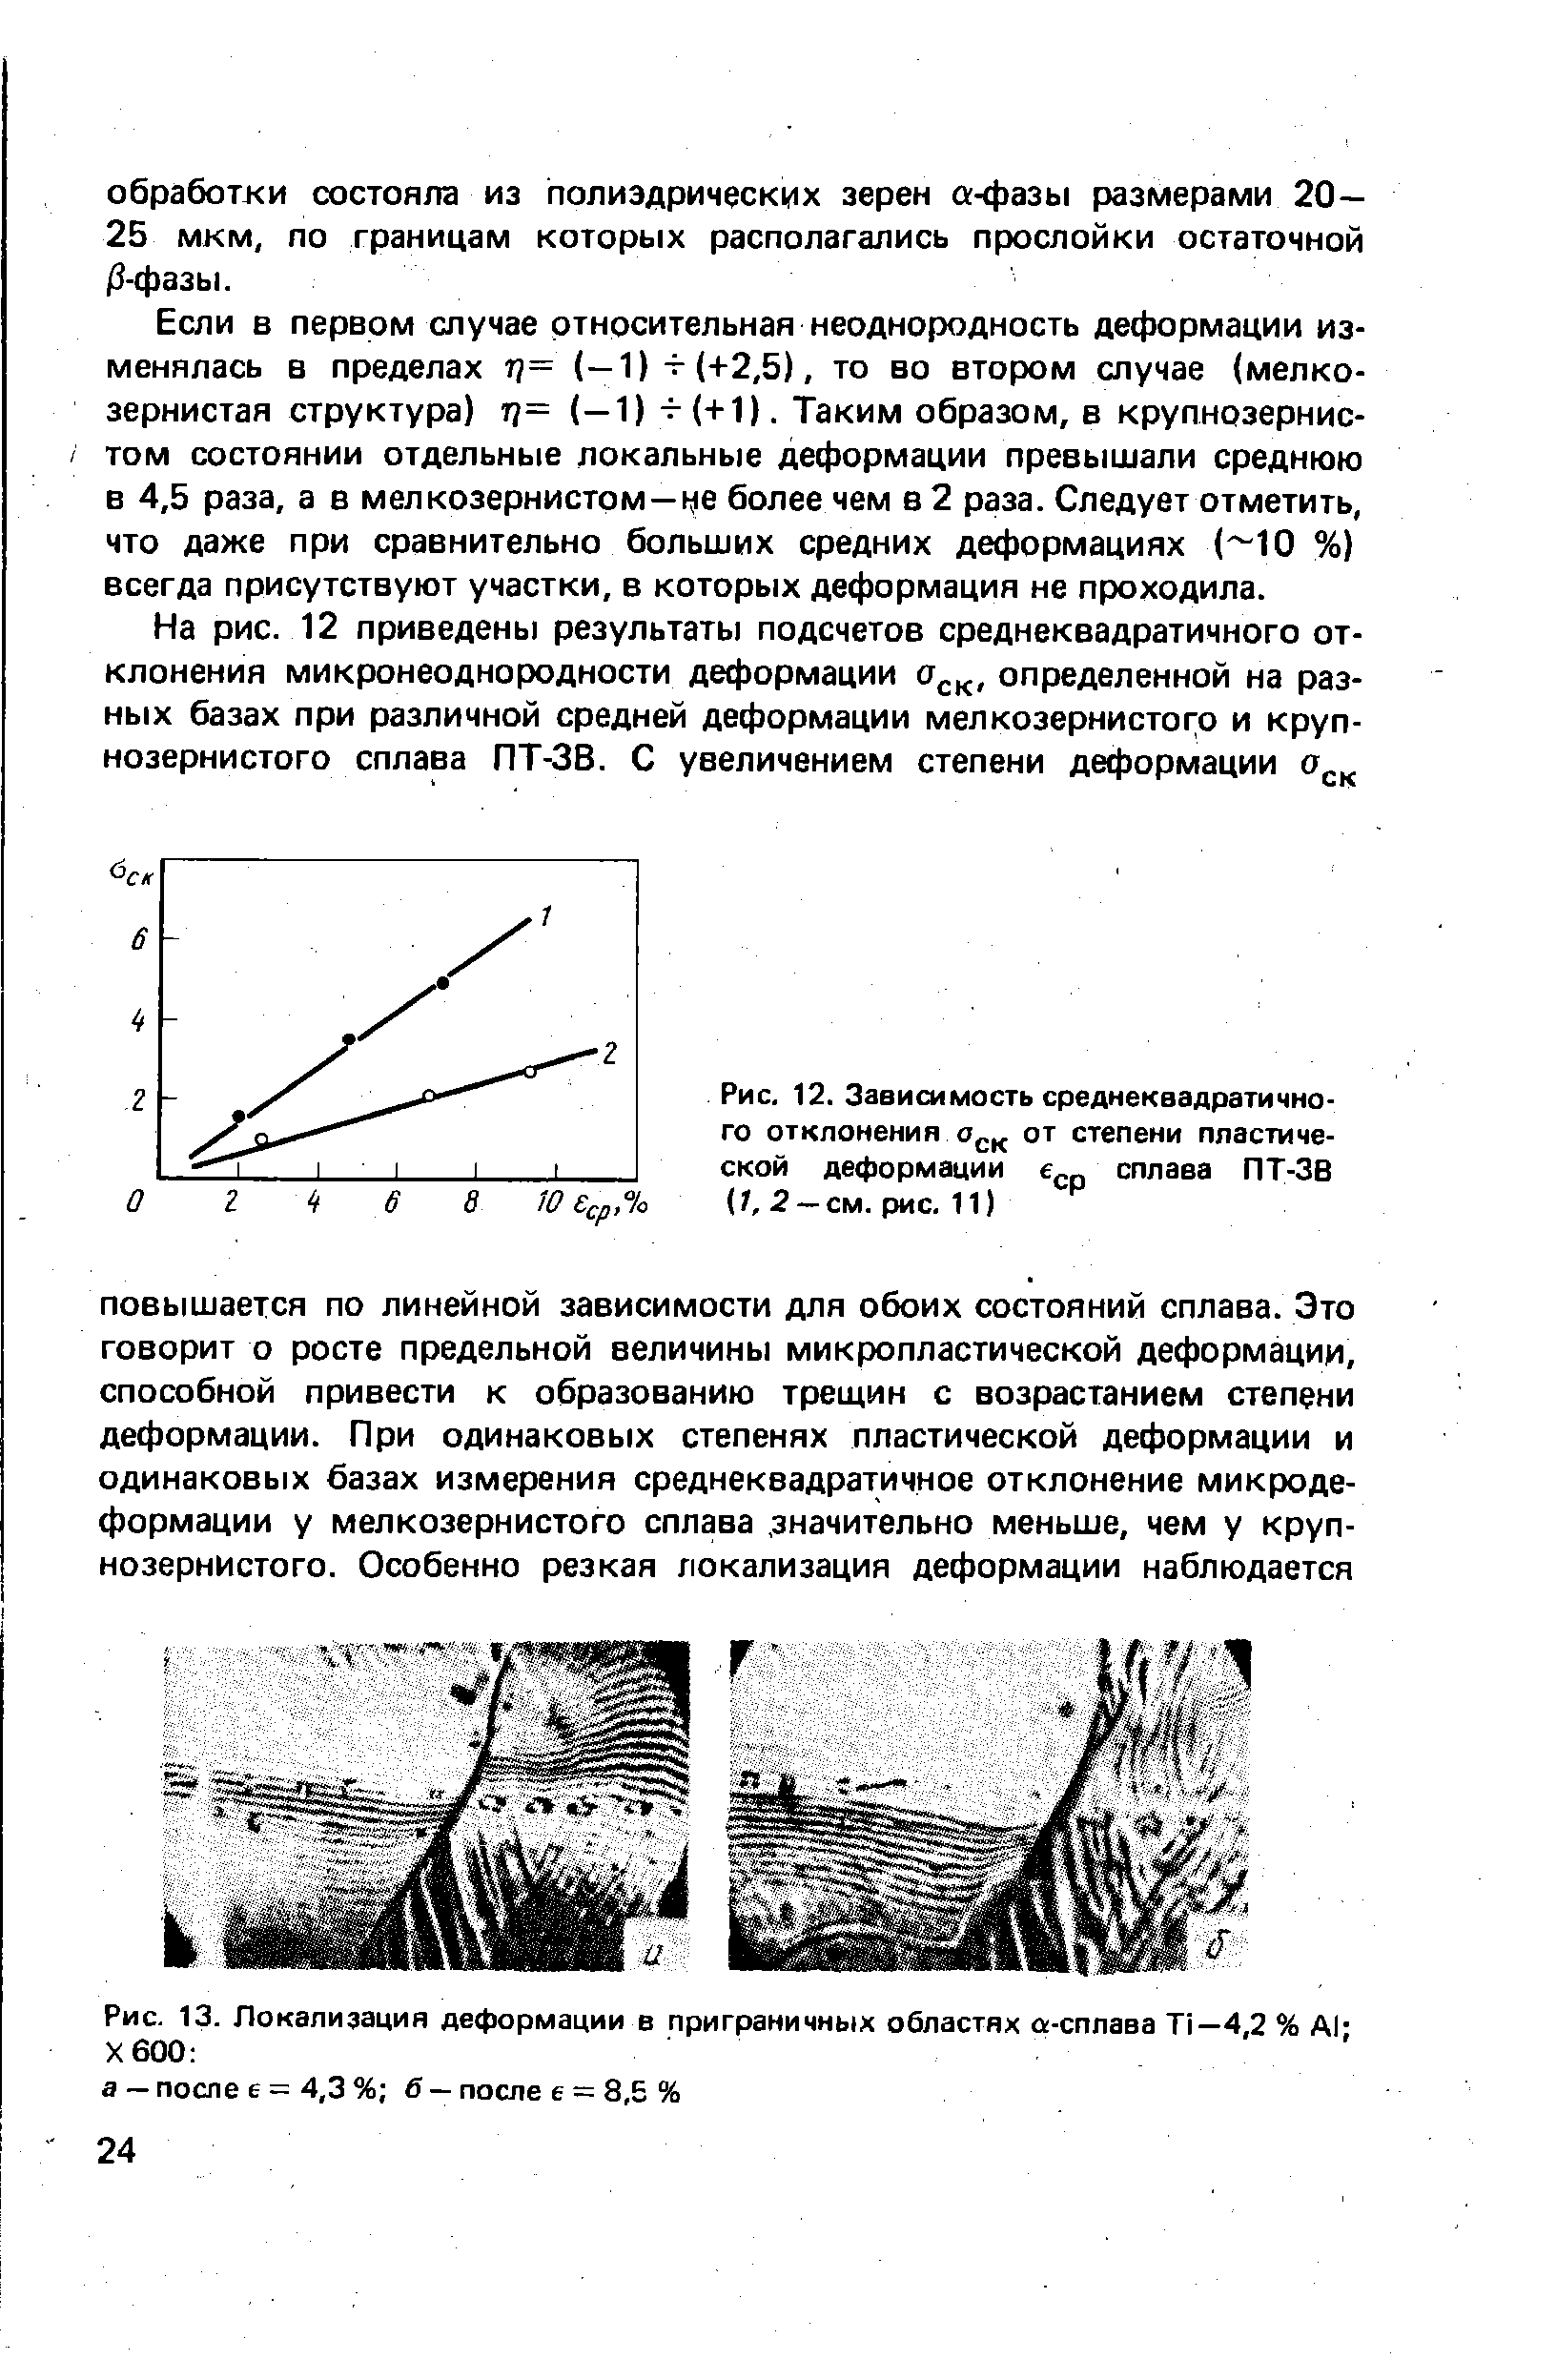 Рис. 13. Локализация деформации в приграничных областях а-сплава Т1—4,2 % А1-Х600 
